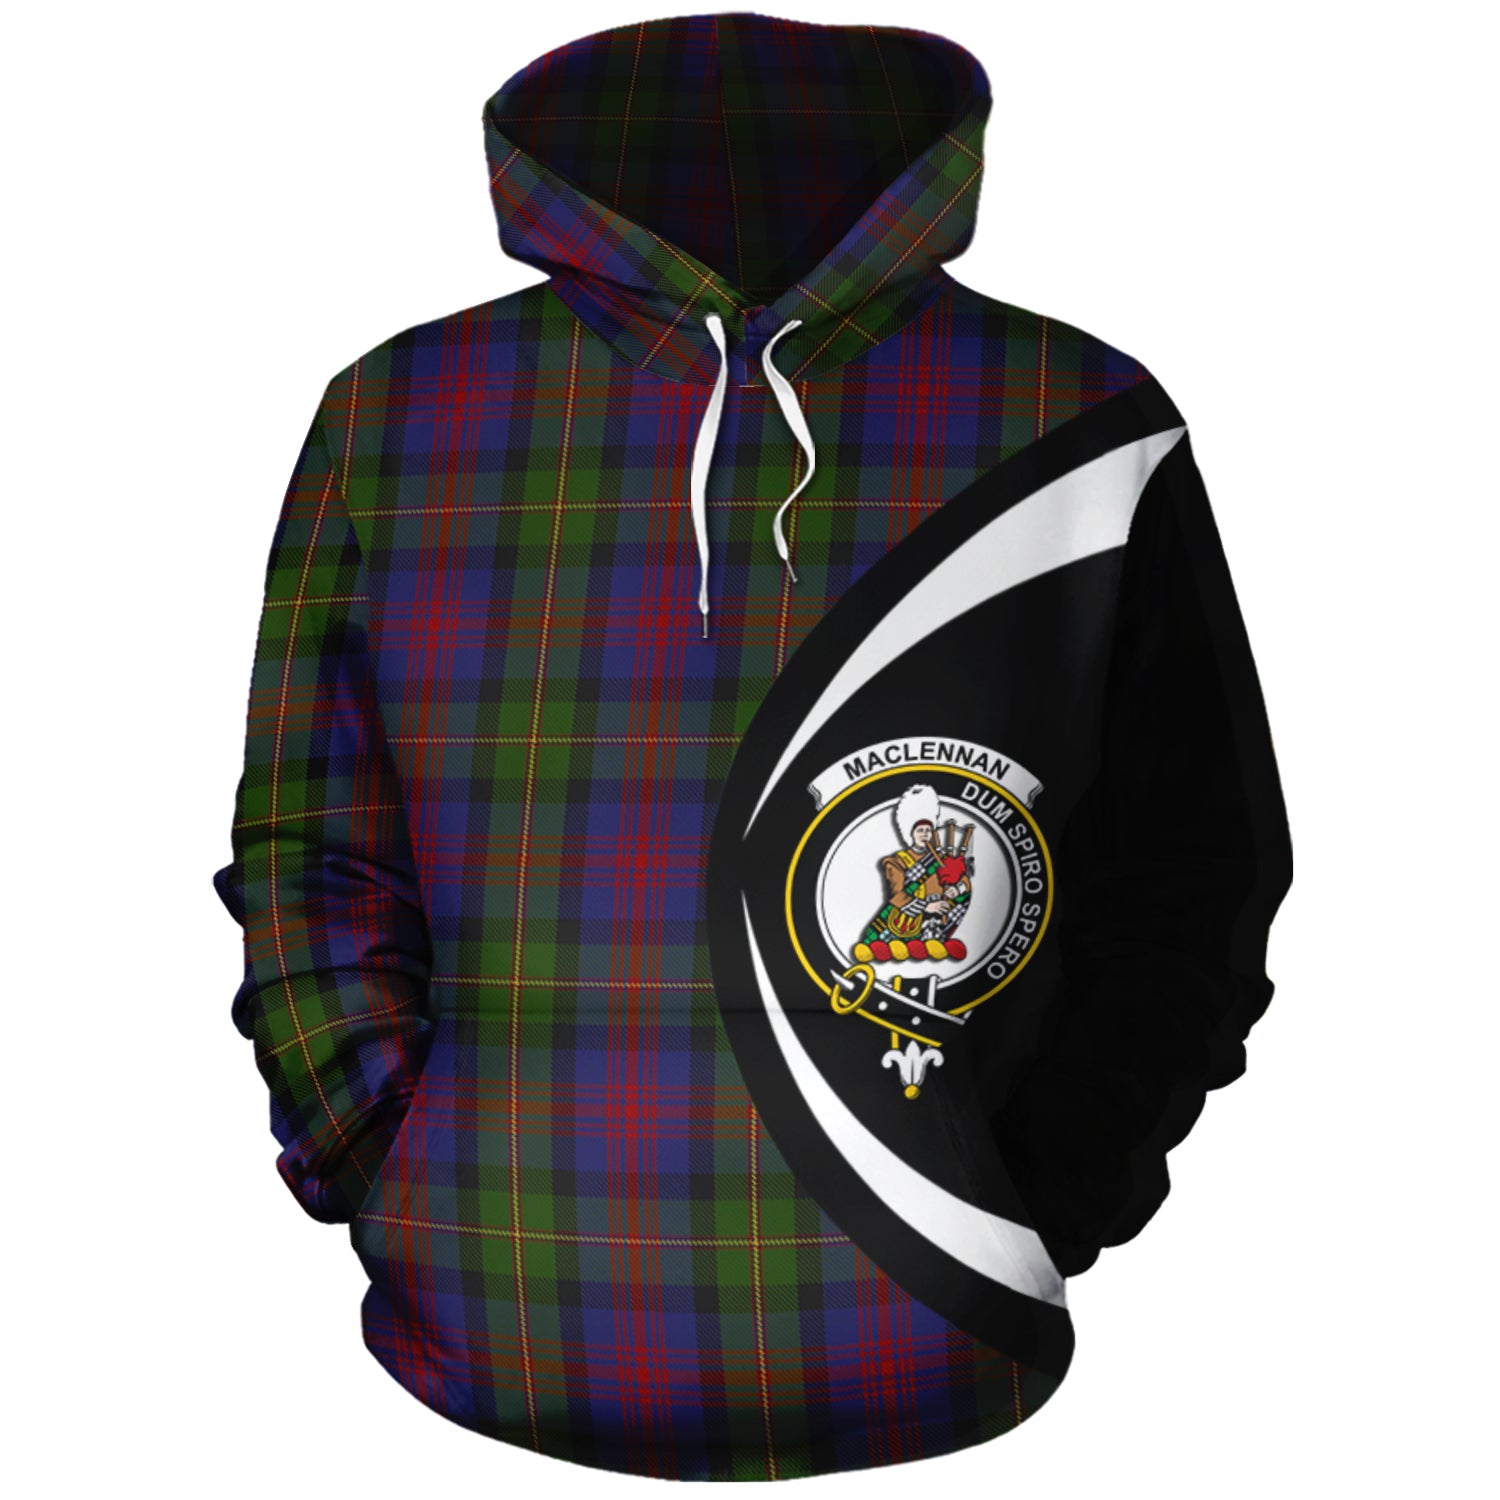 scottish-maclennan-clan-crest-circle-style-tartan-hoodie